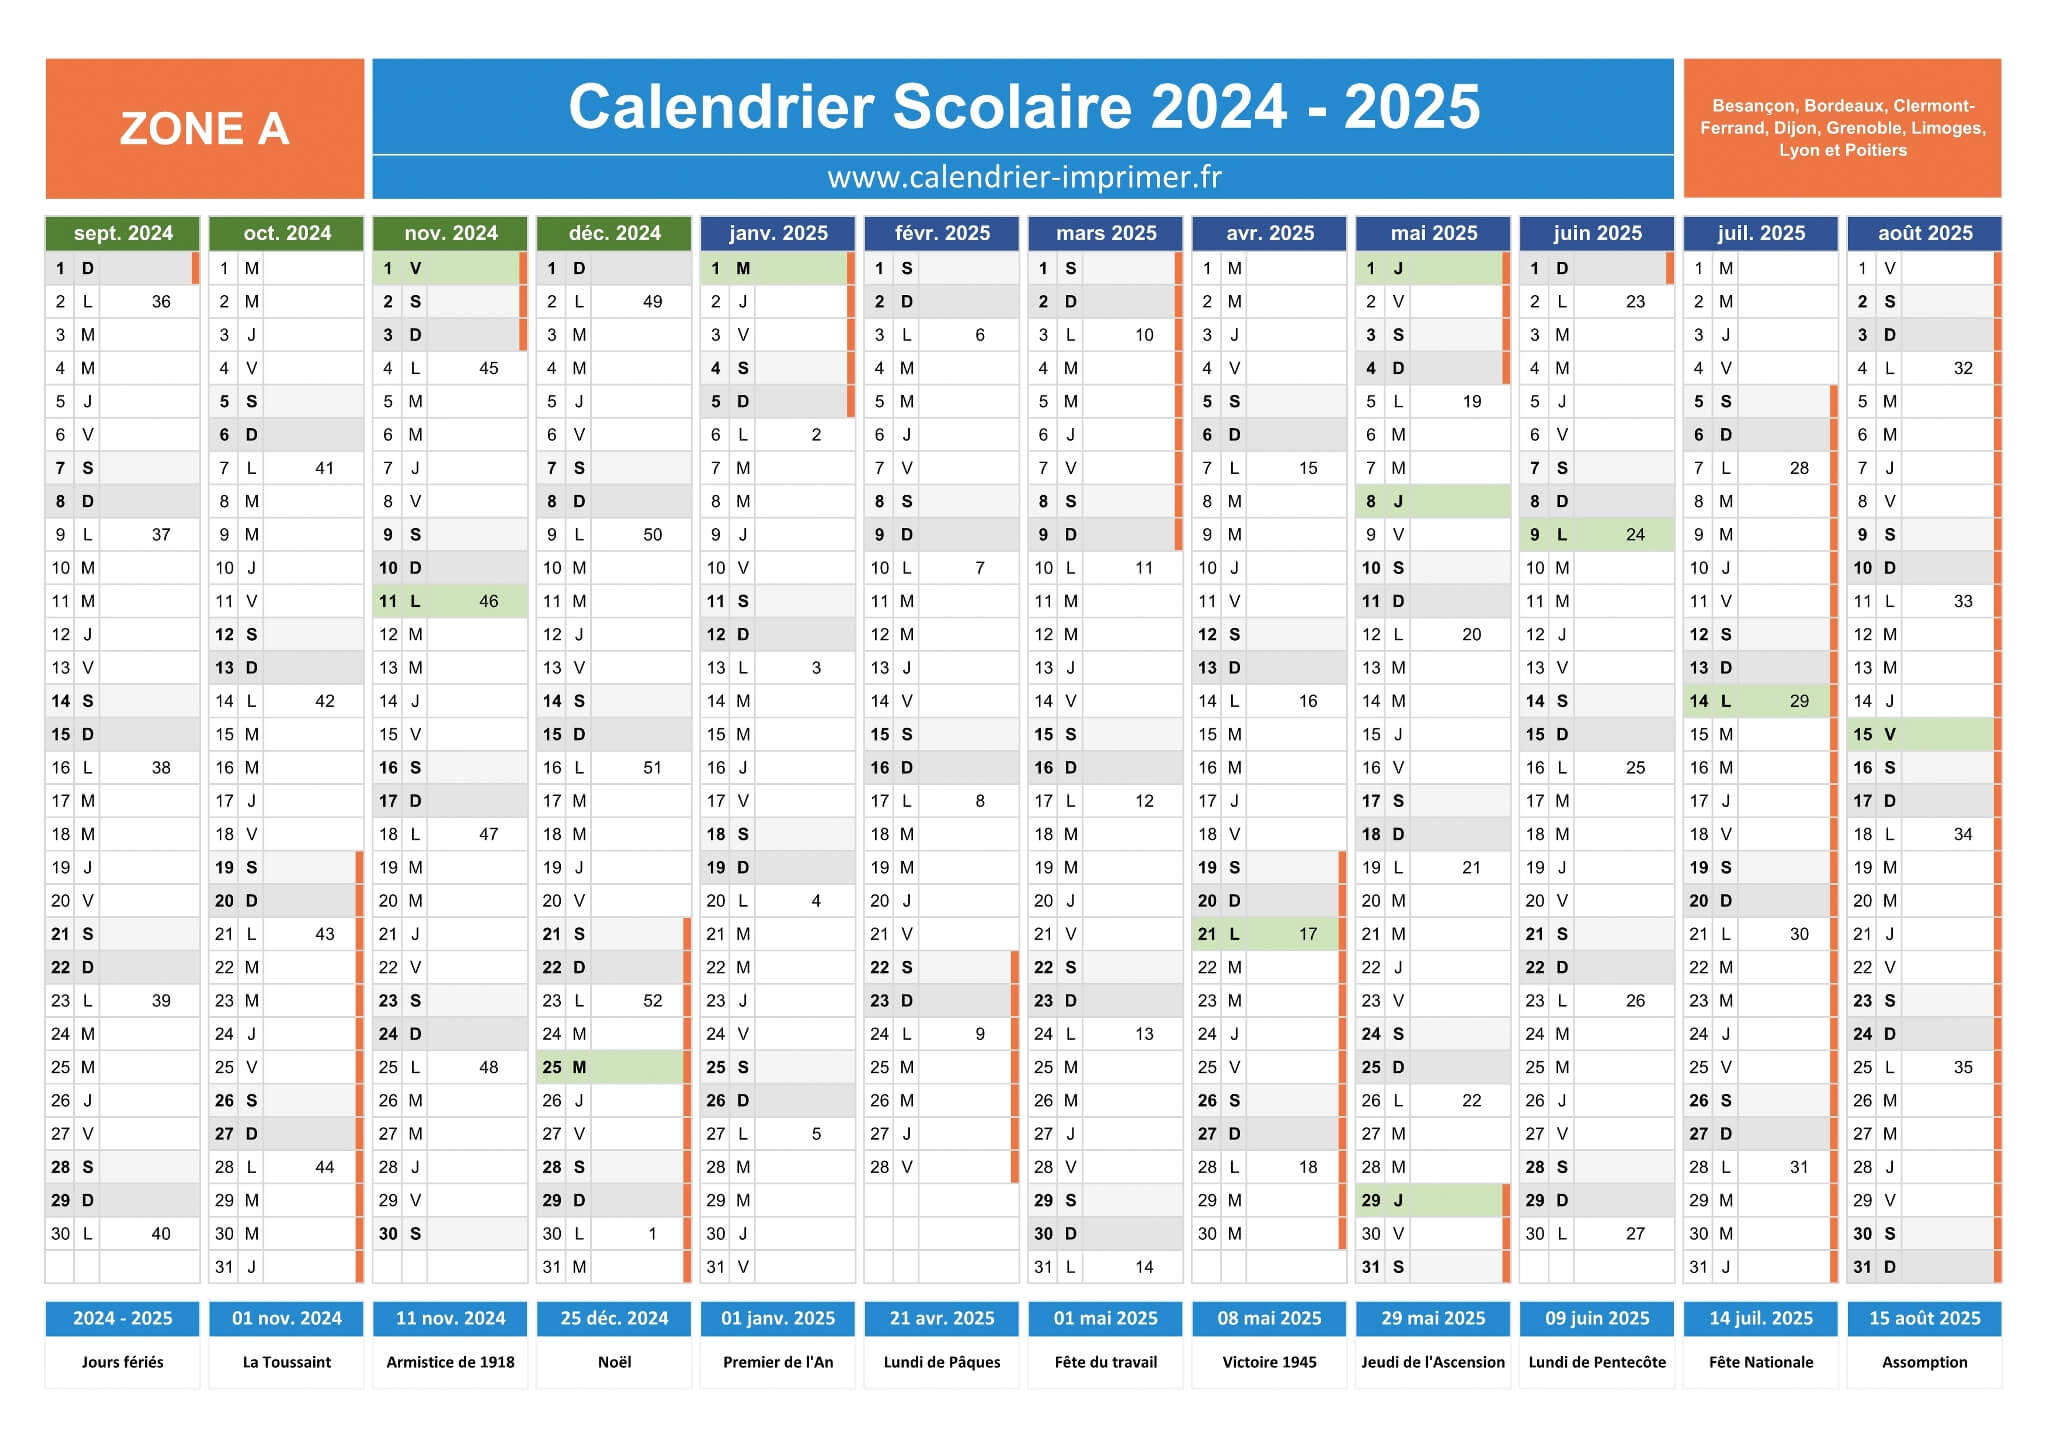 Calendrier scolaire 2024-2025, calques, vacances scolaires, Saints, 12 mois  Stock Vector